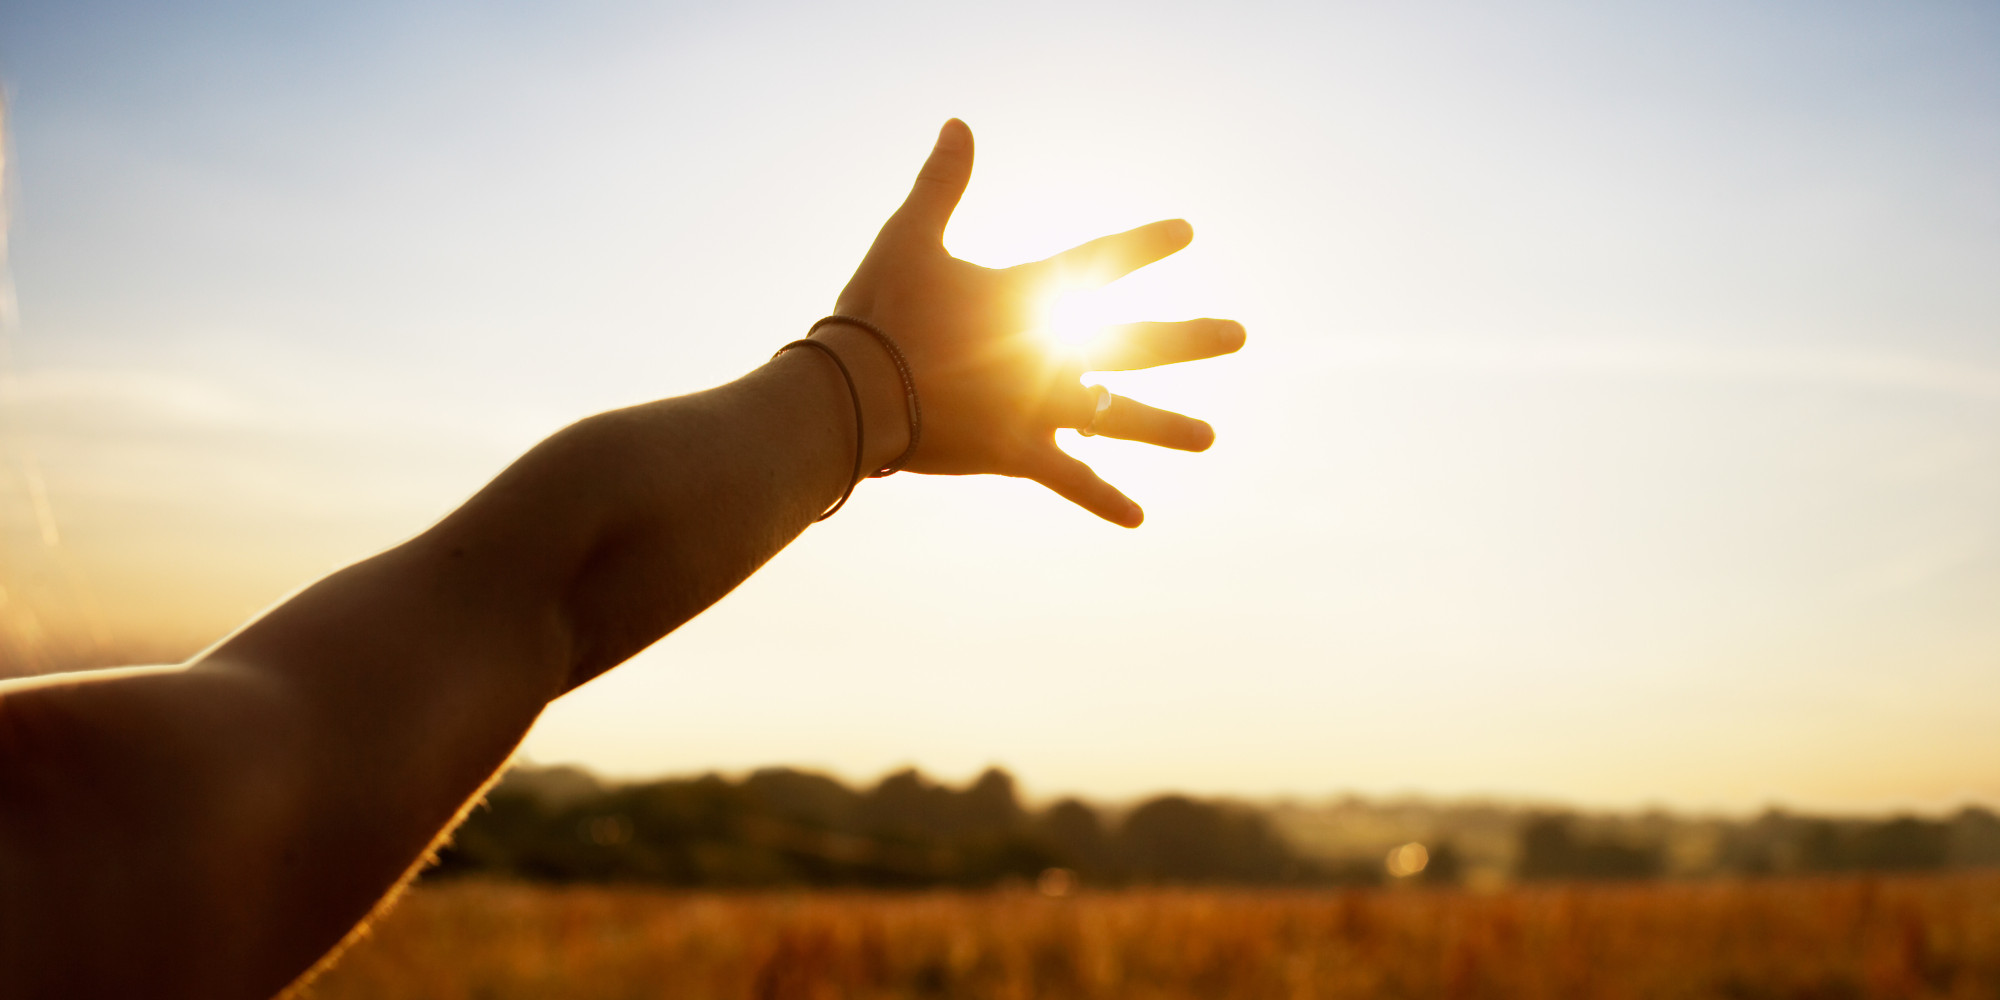 Young woman reaching hand towards sun